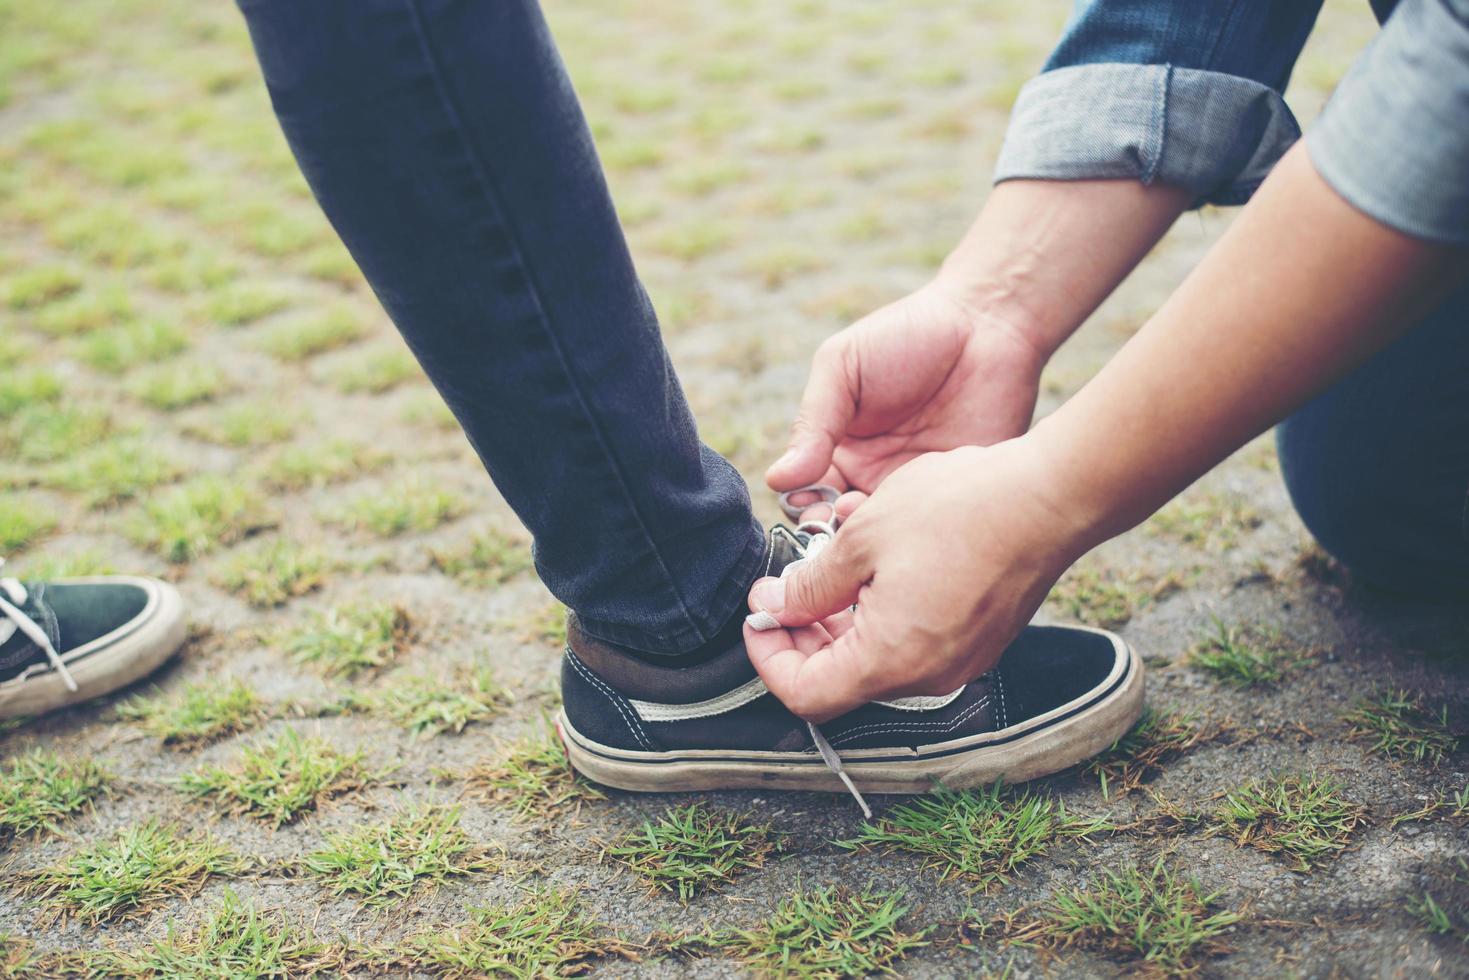 novio hipster atando zapatos a sus chicas mientras se relaja en vacaciones, concepto de pareja enamorada. foto